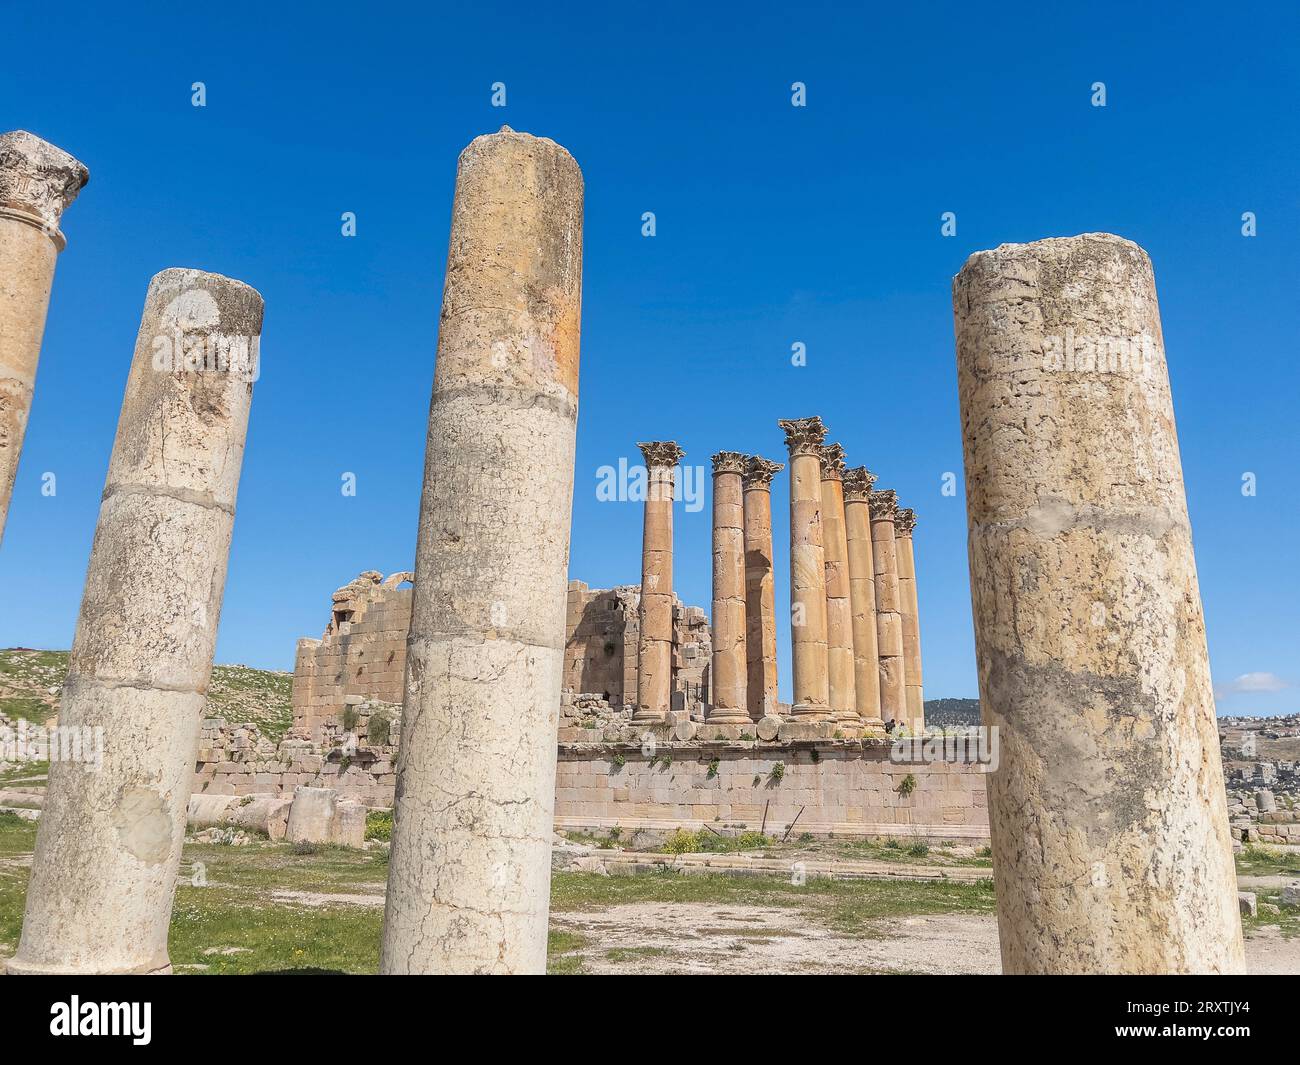 Des colonnes encadrent un bâtiment dans l'ancienne ville de Jerash, qui aurait été fondée en 331 av. J.-C. par Alexandre le Grand, Jerash, Jordanie, Moyen-Orient Banque D'Images